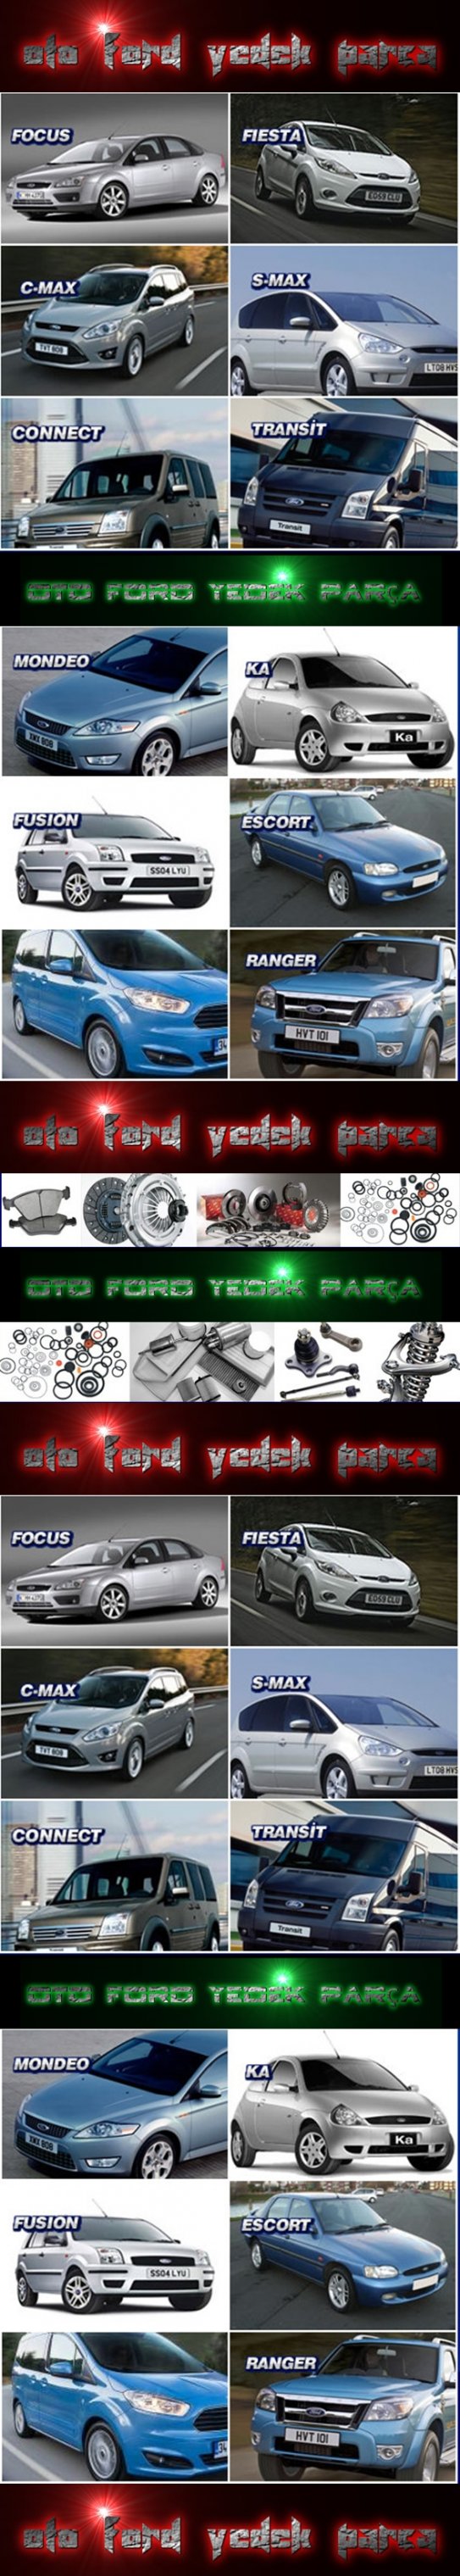 Ford Yedek Parça Bursa, Focus, Escort, Fiesta, Transit, Mondeo, Ford Yedekleri